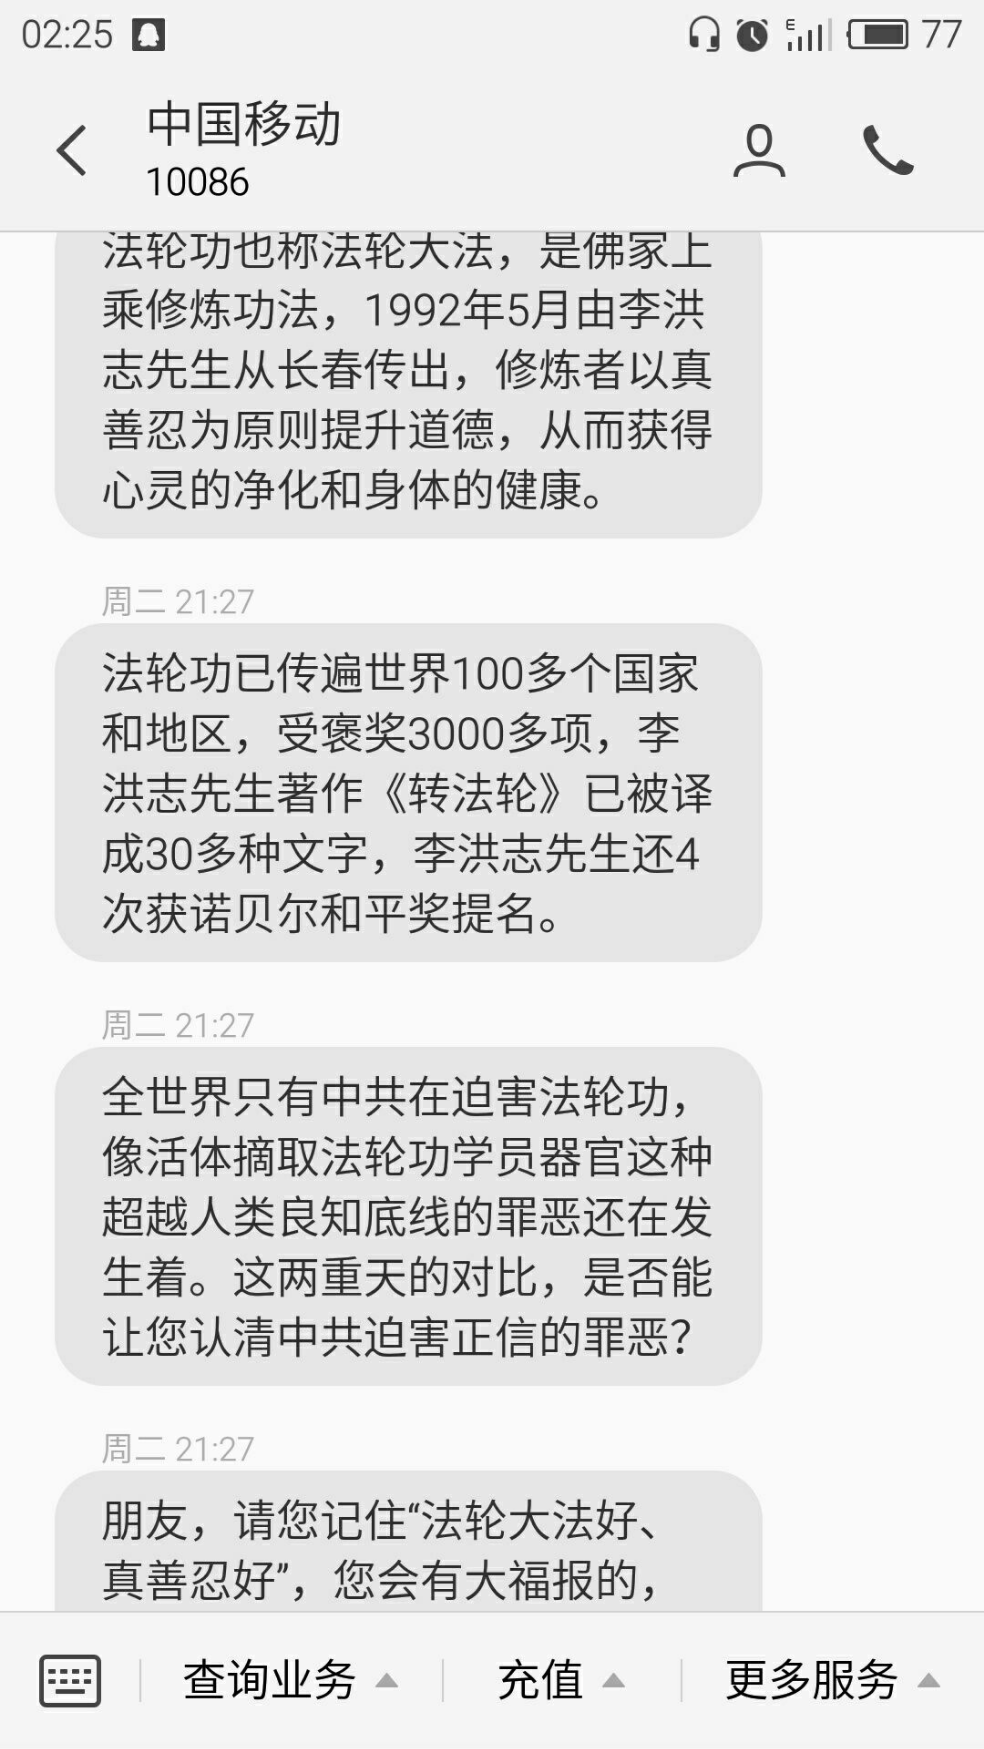 手机收到中国移动发来的非法短信,什么情况? 